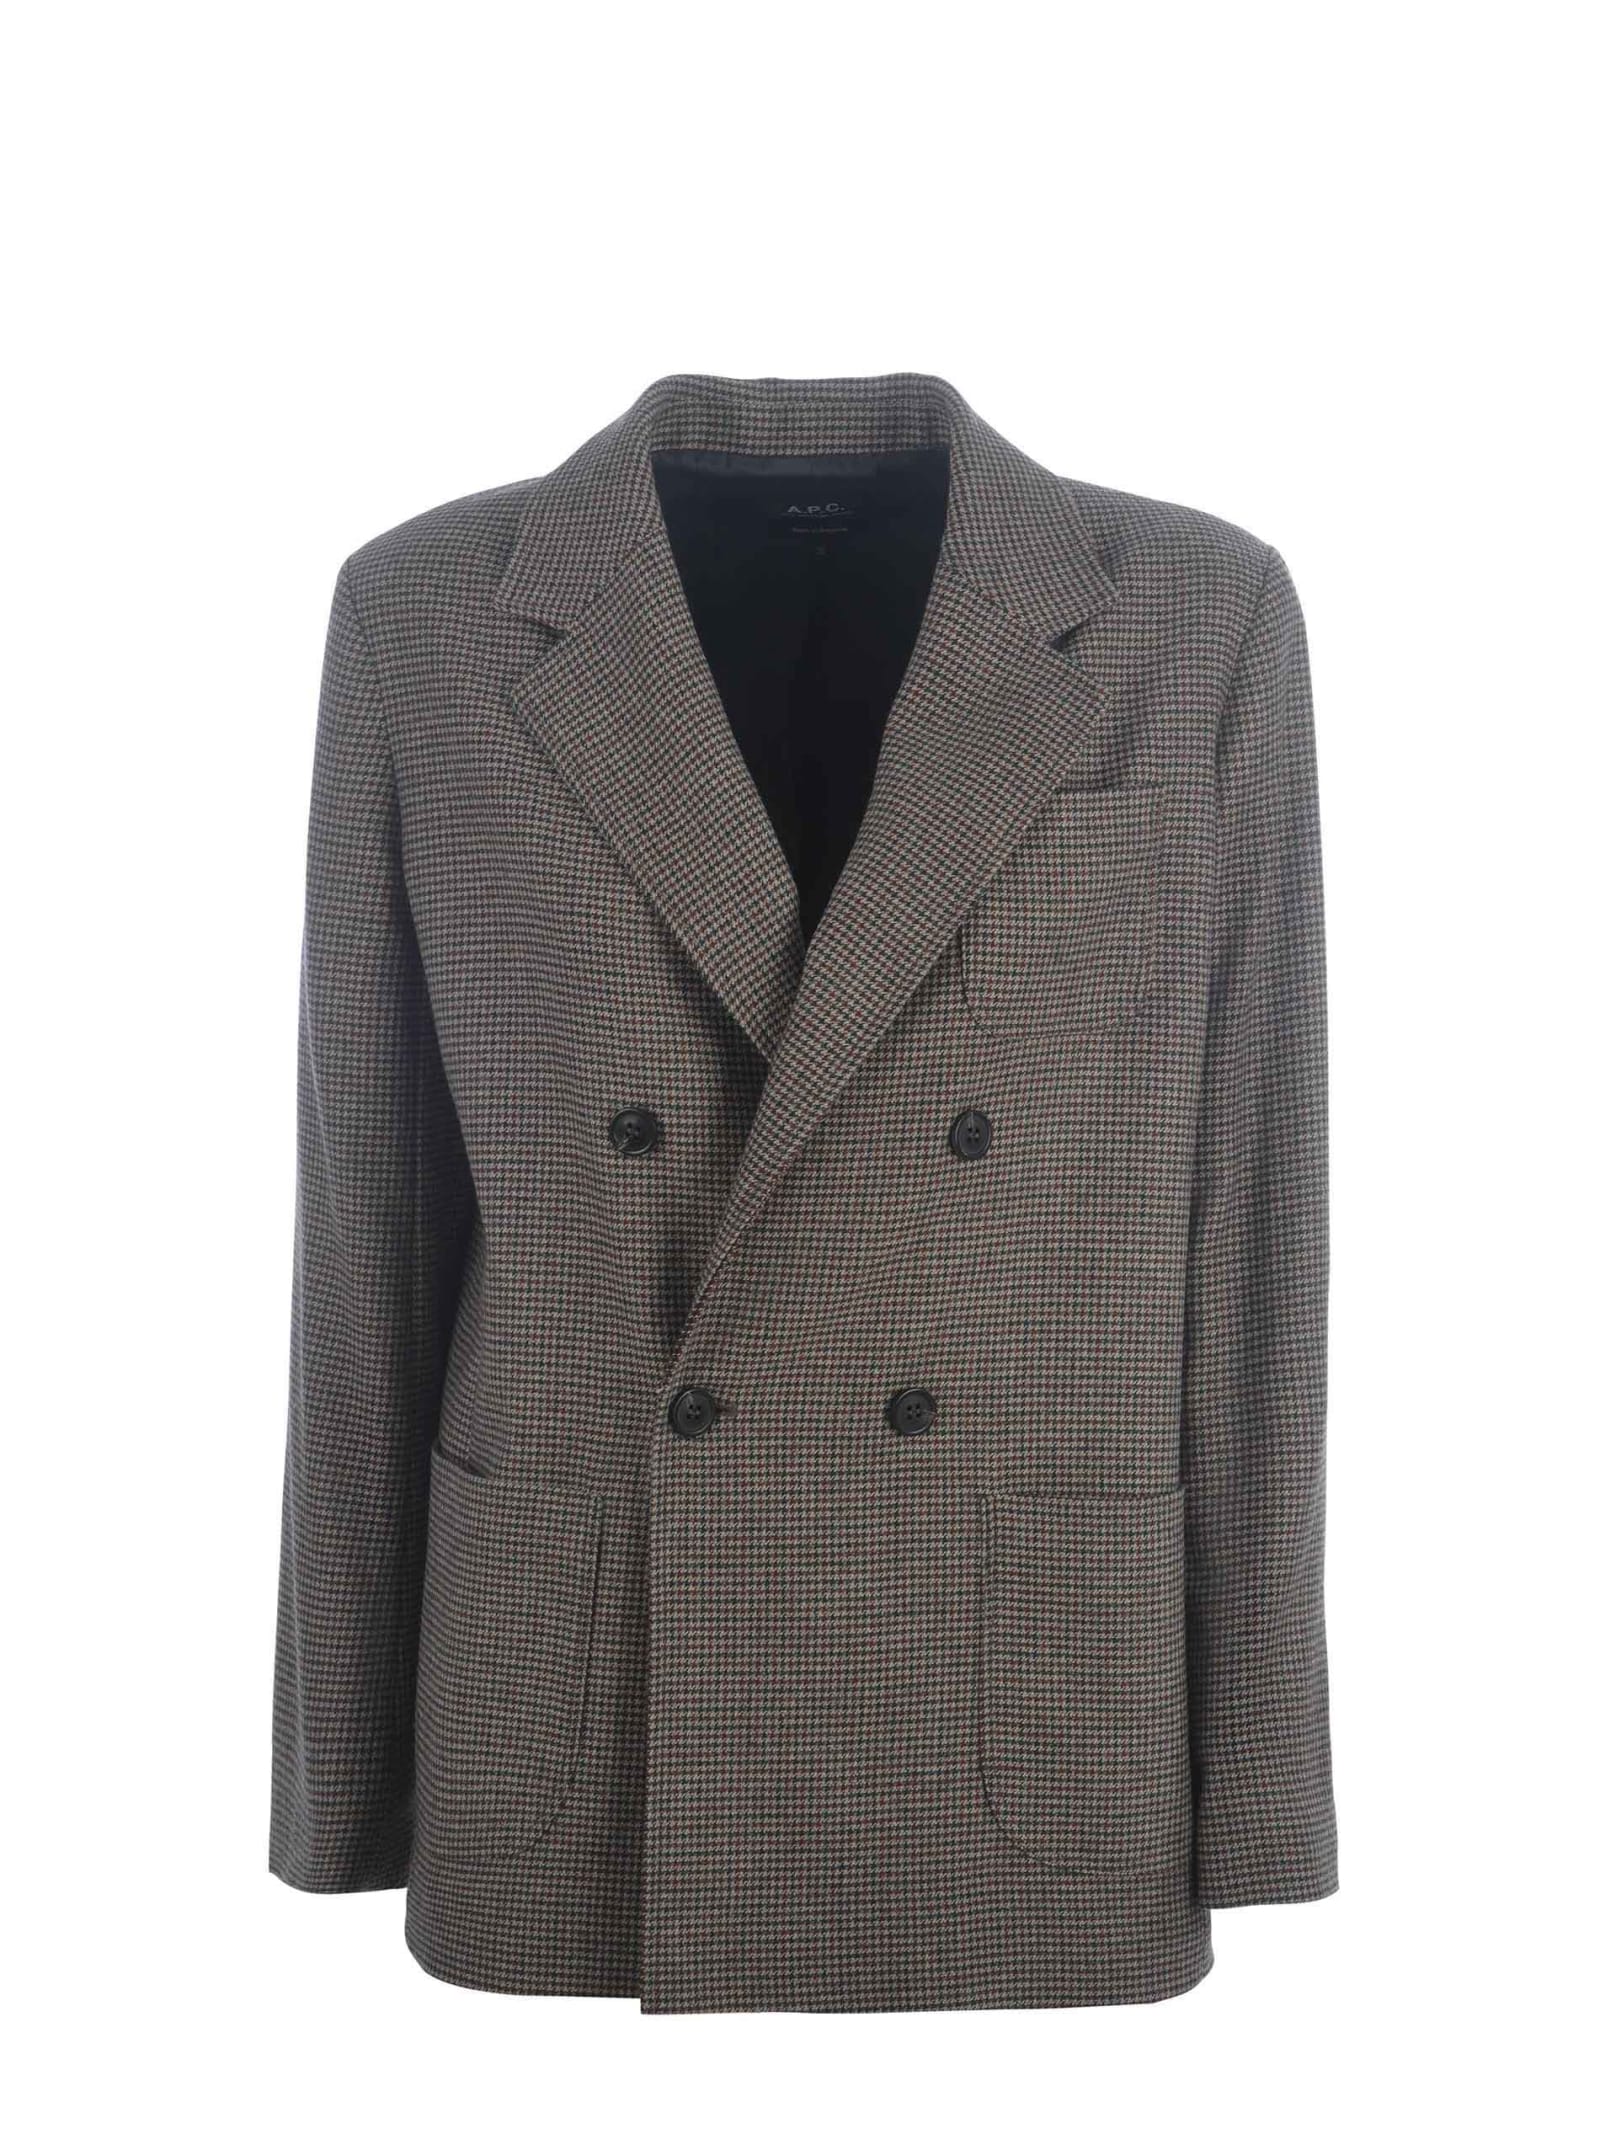 Jacket A.p.c. prune Longue In Wool Blend